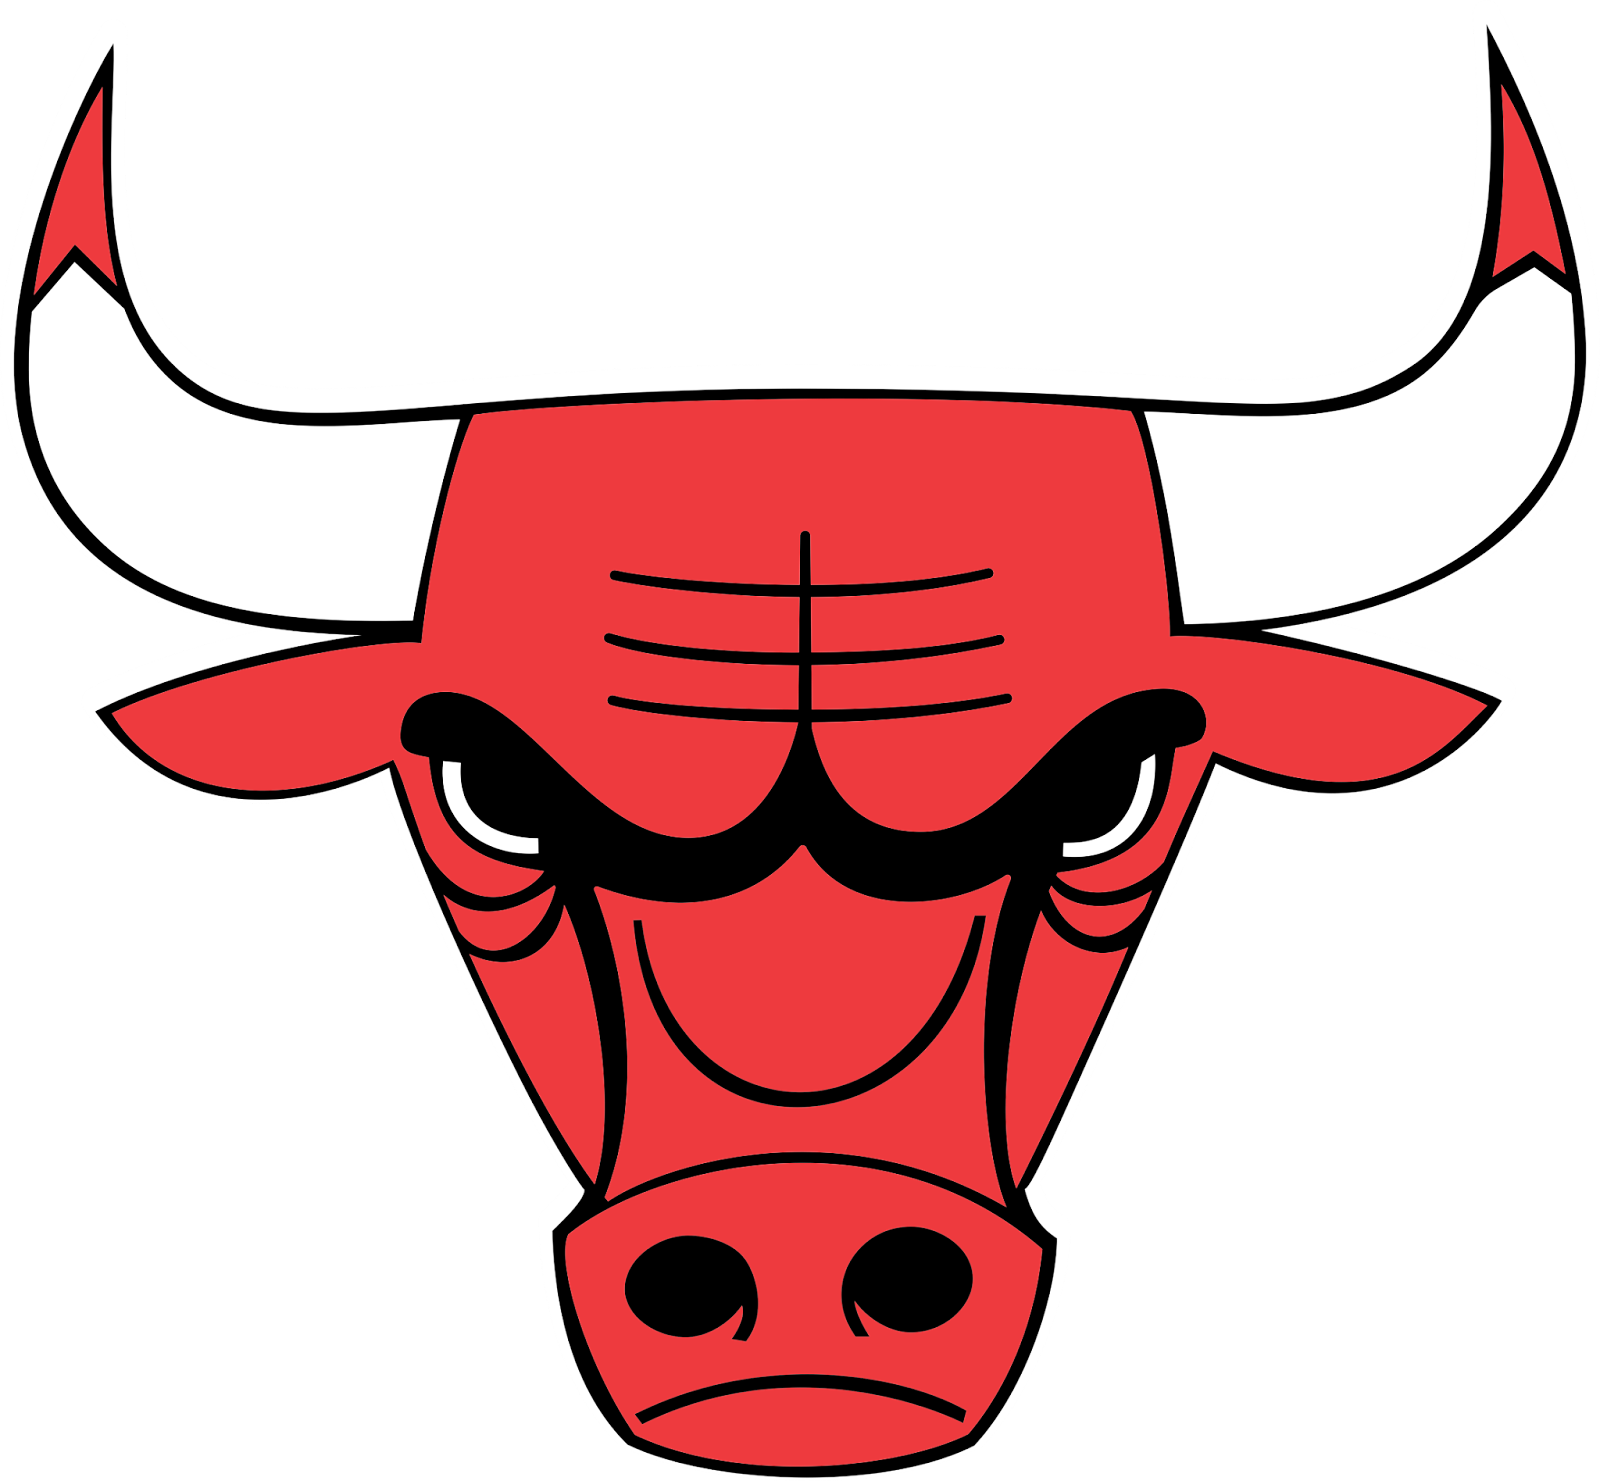 Bulls Logo Png Chicago Bulls Logo Png Transparent Amp - vrogue.co